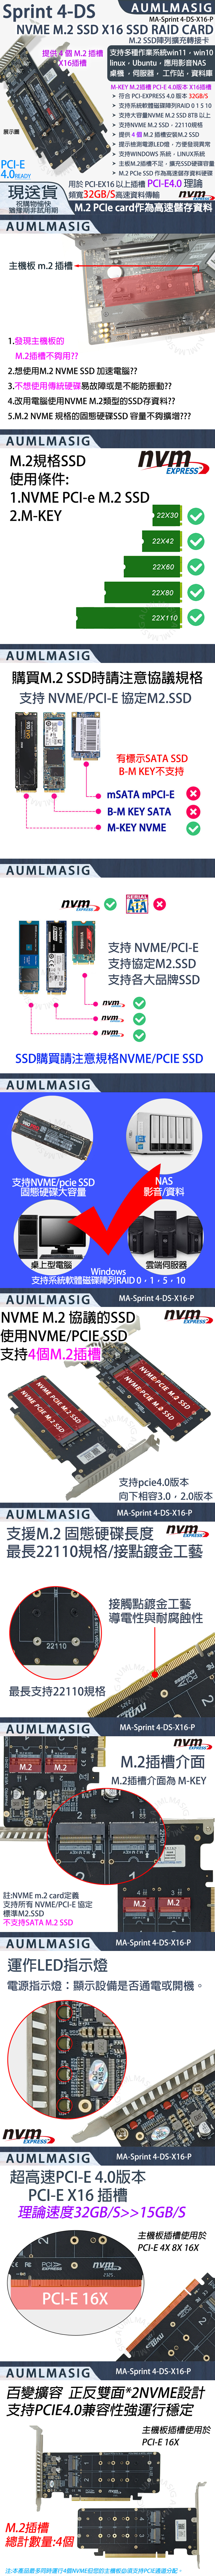 展示圖Sprint DSAUGM   6  AID ASSD 98 98 PR4 M22X16插槽3   RAID  INTL R &SSD 980 EMA-Sprint 4-DS-X16-P SSD陣列擴充轉接linux Ubuntu NAS桌機伺服器工作站資料庫M-KEY M2 -E -EXPS 4.032GBS 0 15 10支持大容量 M.2 SSD 8TB 以上 M.2 SSD 4 M.2-E4.READY22110M.2 SSD提示檢測電源燈方便發現異常 支持INDWS 系統,LINUX系統主板M.2插槽不足,擴充SSD硬碟容量 M.2  SSD 作為高速儲存資料硬碟用於-EX16以上插槽 PCI-E4.0理論現送貨 頻寬32GB/S高速資料傳輸祝購物愉快猶豫期非試用期M.2  card作為高速儲存資料AUMLM EXPRESS主機板 m.2插槽-STRIX Z690 GAMING STRIX M.21.發現主機板的M.2插槽不夠用??2.想使用M.2 NVME SSD 加速電腦??3.不想使用傳統硬碟易故障或是不能防振動??4.改用電腦使用NVME M.2類型的SSD存資料??5.M.2 NVME 規格的固態硬碟SSD容量不夠擴增???AUMLMASIGM.2規格SSDEXPRESS使用條件1.NVME PCI-e M.2 SSD2.M-KEY22X22X4222X6022X8022X110AUMLMASIG購買M.2 SSD時請注意協議規格支持 NVME/PCI-E 協定M2.SSD970 EVV-NAND SSD  P/N: 1P) GXBL61953AUMLMASIG500GB A  UM110Kingston有標示S SSDB-M KEY不支持mSATA -E B-M KEY SATAM-KEY NVMEXEXPRESSTSHIBASERIALATA NVME/PCI-EM2.SSD支持各大品牌SSDnvmEXPRESSnvmEXPRESSnvmEXPRESSSSD NVME/ SSDAUMLMASIGV-NAND SSD980 PRMASSAMSUNG4G CNVME/pcie SSD固態硬碟大容量桌上型電腦WindowsNAS影音/資料雲端伺服器,AUMLMASIGMA-Sprint 4-DS-X16-PNVME M.2 SSDNVME/ SSD支持4個M.2插槽nvmEXPRESSNVME PCIE M.2 SSDNVME PCIE M.2 SSDOman PCISupport   & PCle RAID & INTEL VROCNVME PCIE M.2 SSD NVME PCIE M.2 SSD22110.AUMLMASIG支持pcie4.0版本向下相容3.0,2.0版本MA-Sprint 4-DS-X16-PnvmEXPRESS支援M.2 固態硬碟長度 最長22110規格/接點鍍金工藝22110D & INTEL VROC接觸點鍍金工藝導電性與耐腐蝕性O最長支持22110規格AUMLMASIGPH44PRO VER:2.1 22H01MADEM.2 M KEYM.2 M KEYM.2M.2100100VT RD R 22MA-Sprint 4-DS-X16-PEXPRESSM.2插槽介面M.2 M-KEYCO221MLMASI22H01卡 W  註:NVME m.2 card定義w.aumimasig.com支持所有 NVME/PCI-E 協定M.2M.2M2.SSD M.2 SSDAUMLMASIG運作LED指示燈MA-Sprint 4-DS-X16-P電源指示燈:顯示設備是否通電或開機。1LEDS RESLEDPASSnvmEXPRESSAUMLMASIGPASSMA-Sprint 4-DS-X16-P超高速PCI-E 4.0版本PCI-E X1632GB/Salt=